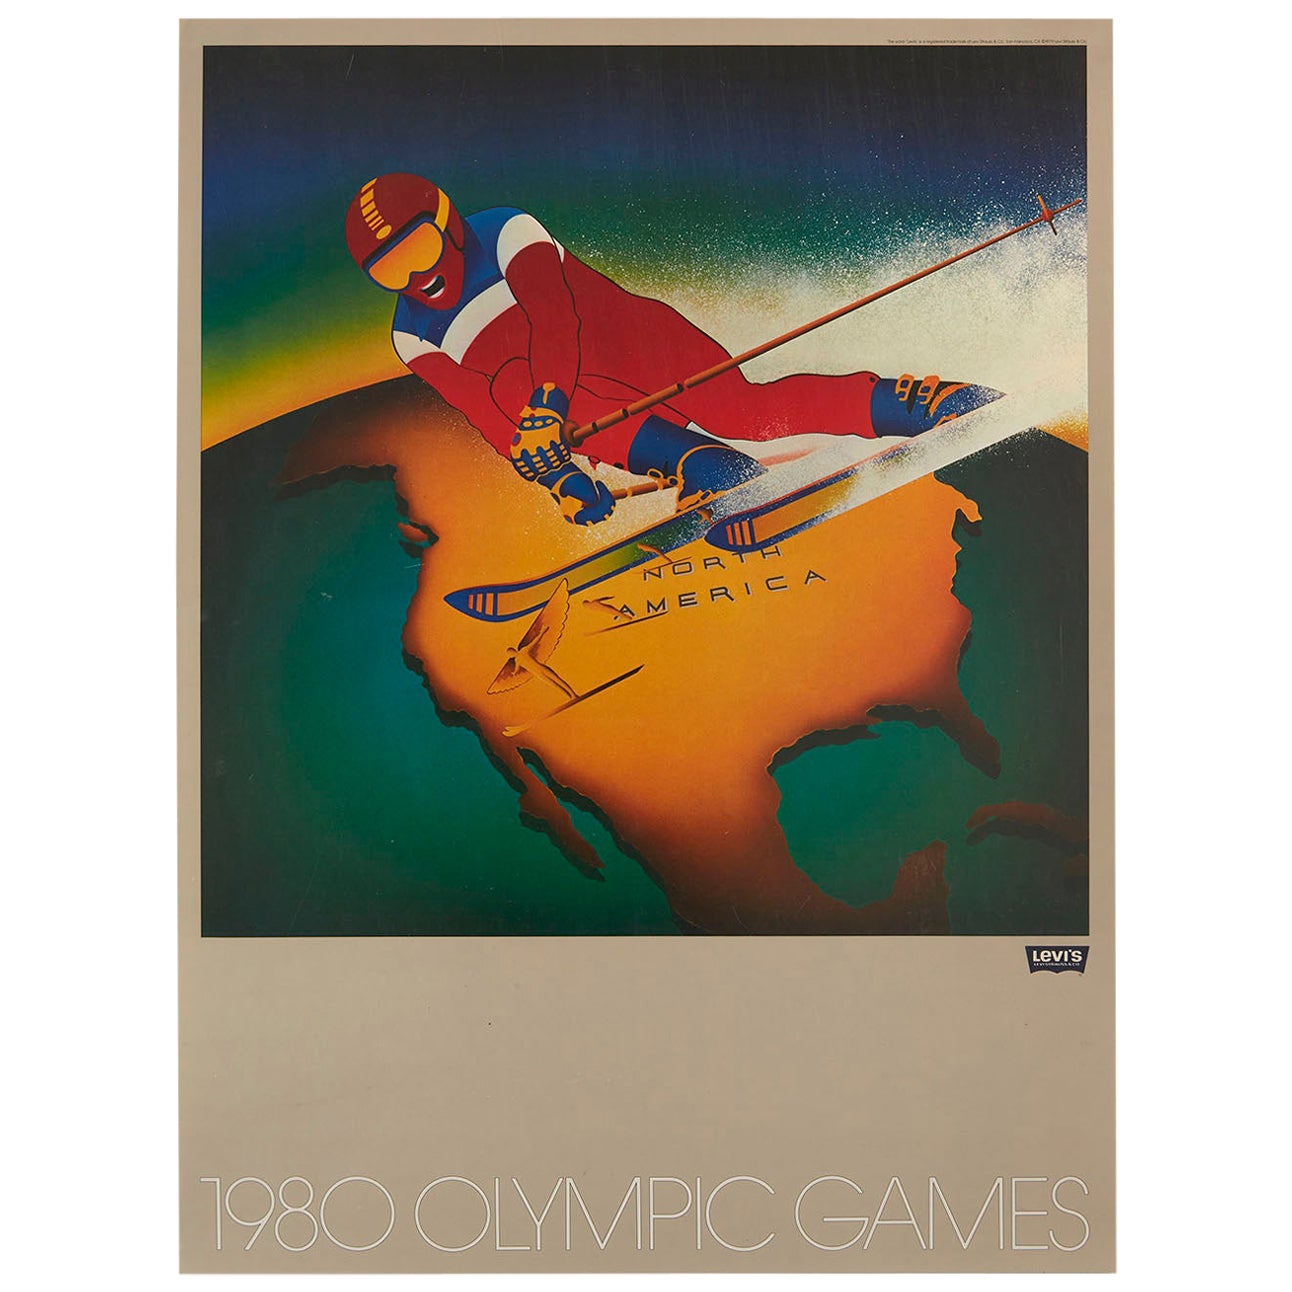 Original Vintage-Sportplakat Levi's Moskau 1980 Olympische Spiele N. America Skifahren